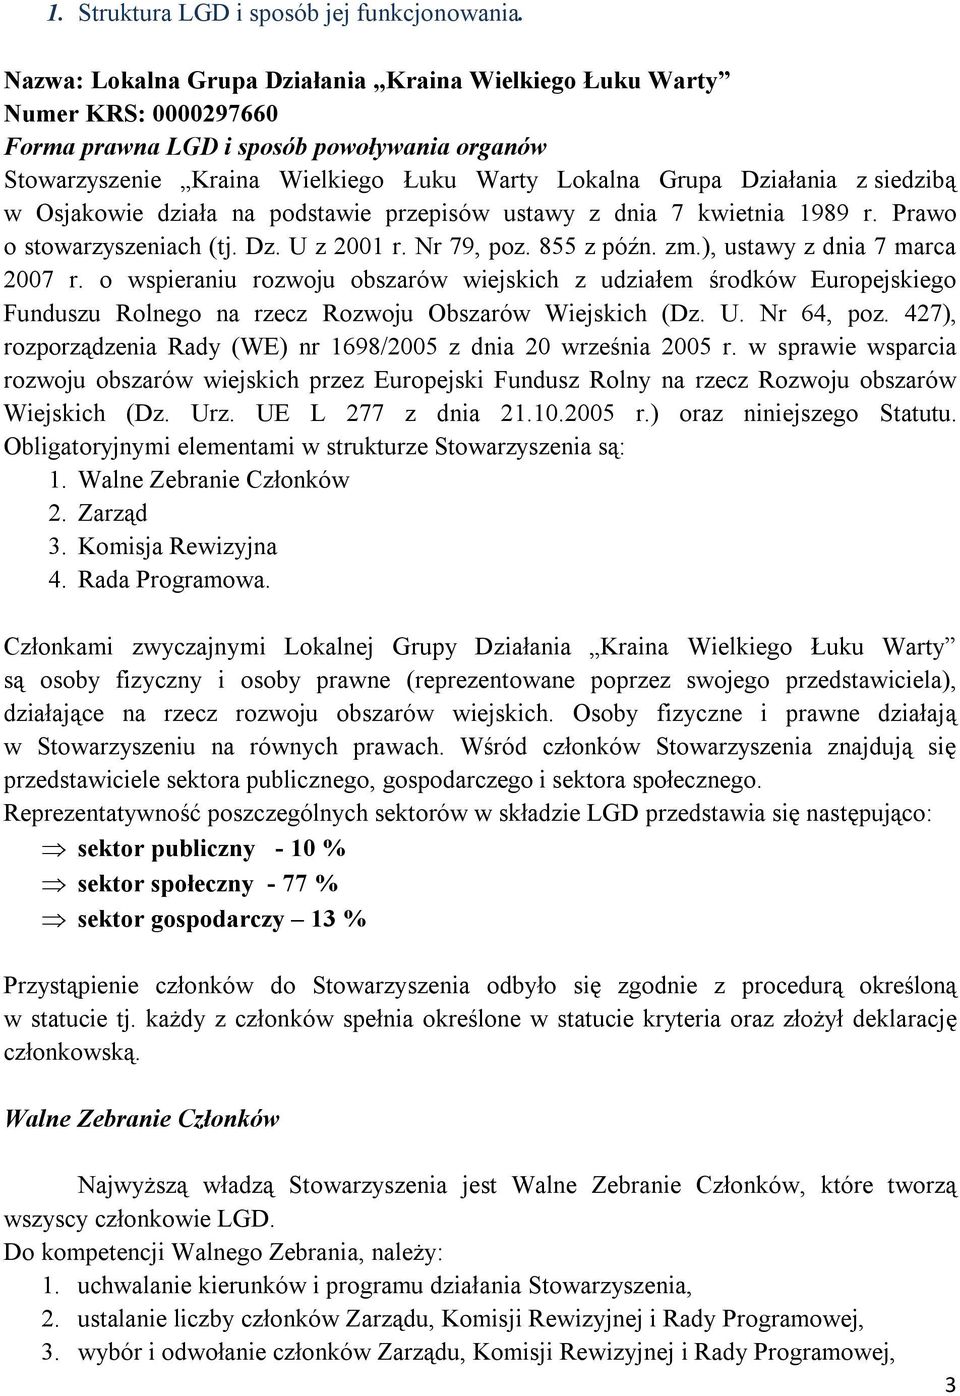 siedzibą w Osjakowie działa na podstawie przepisów ustawy z dnia 7 kwietnia 1989 r. Prawo o stowarzyszeniach (tj. Dz. U z 2001 r. Nr 79, poz. 855 z późn. zm.), ustawy z dnia 7 marca 2007 r.